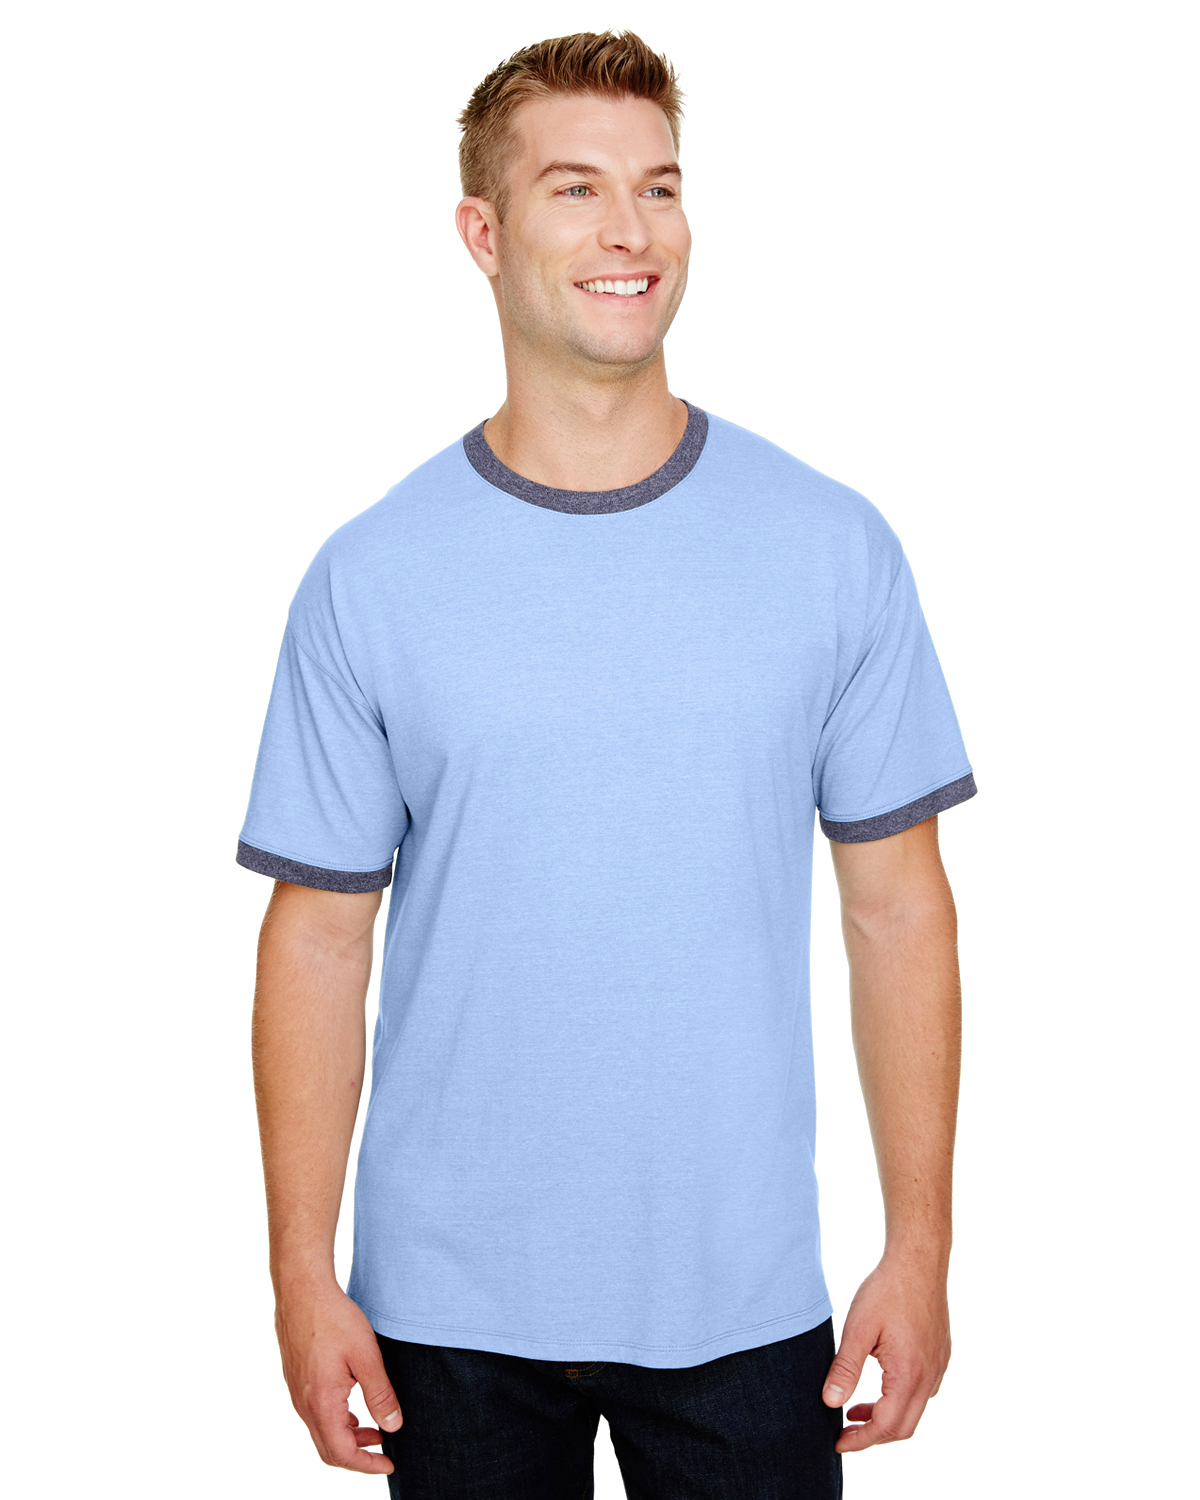 champion light blue shirt online